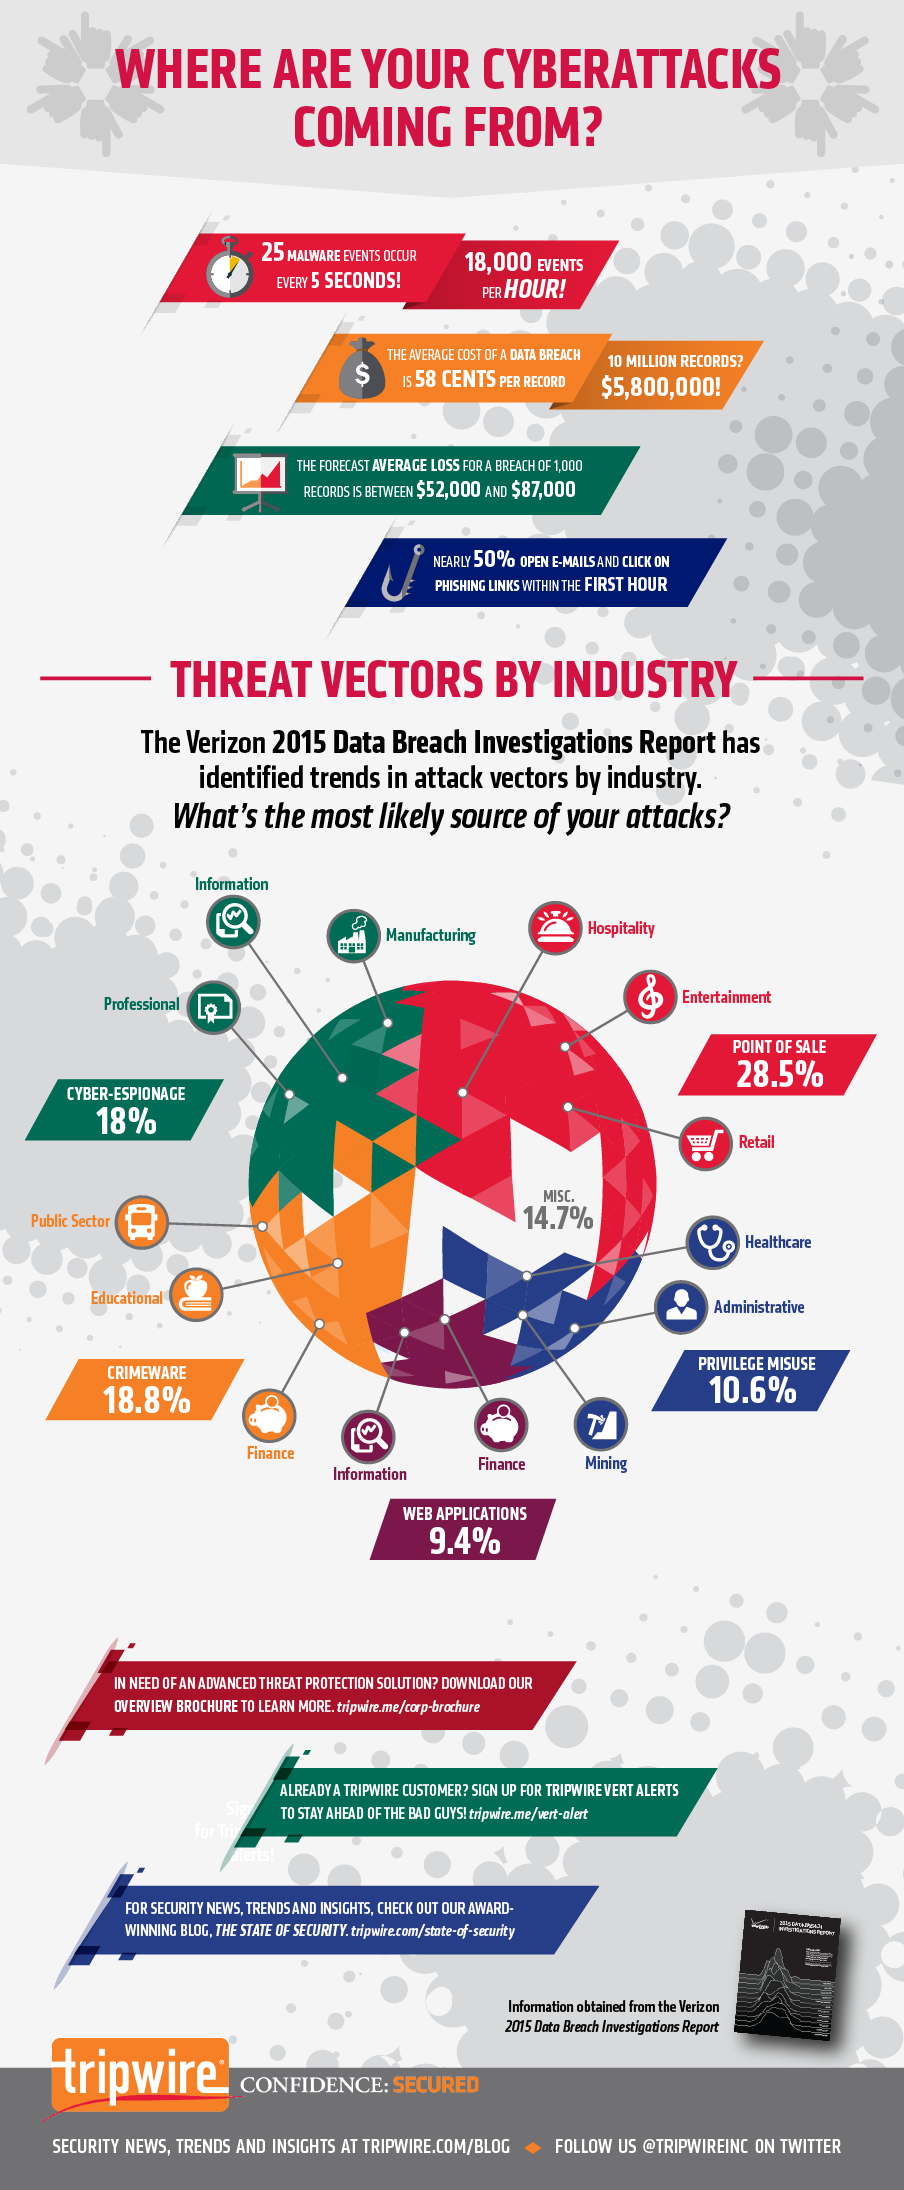 Tripwire_2015_Verizon_Attack_Vectors_infographic.png